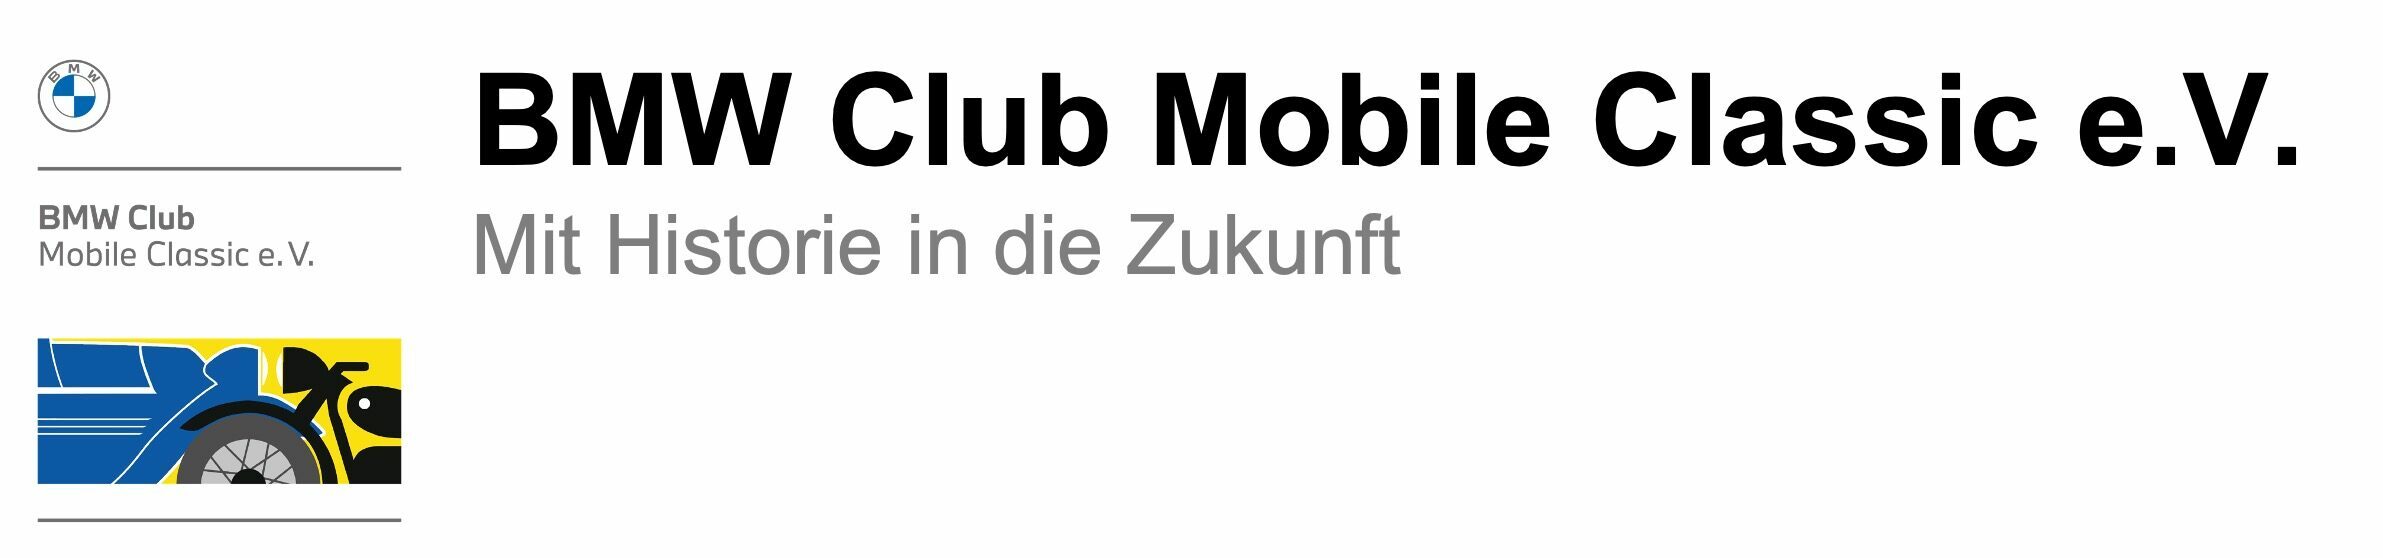 BMW Club Mobile Classic e.V.